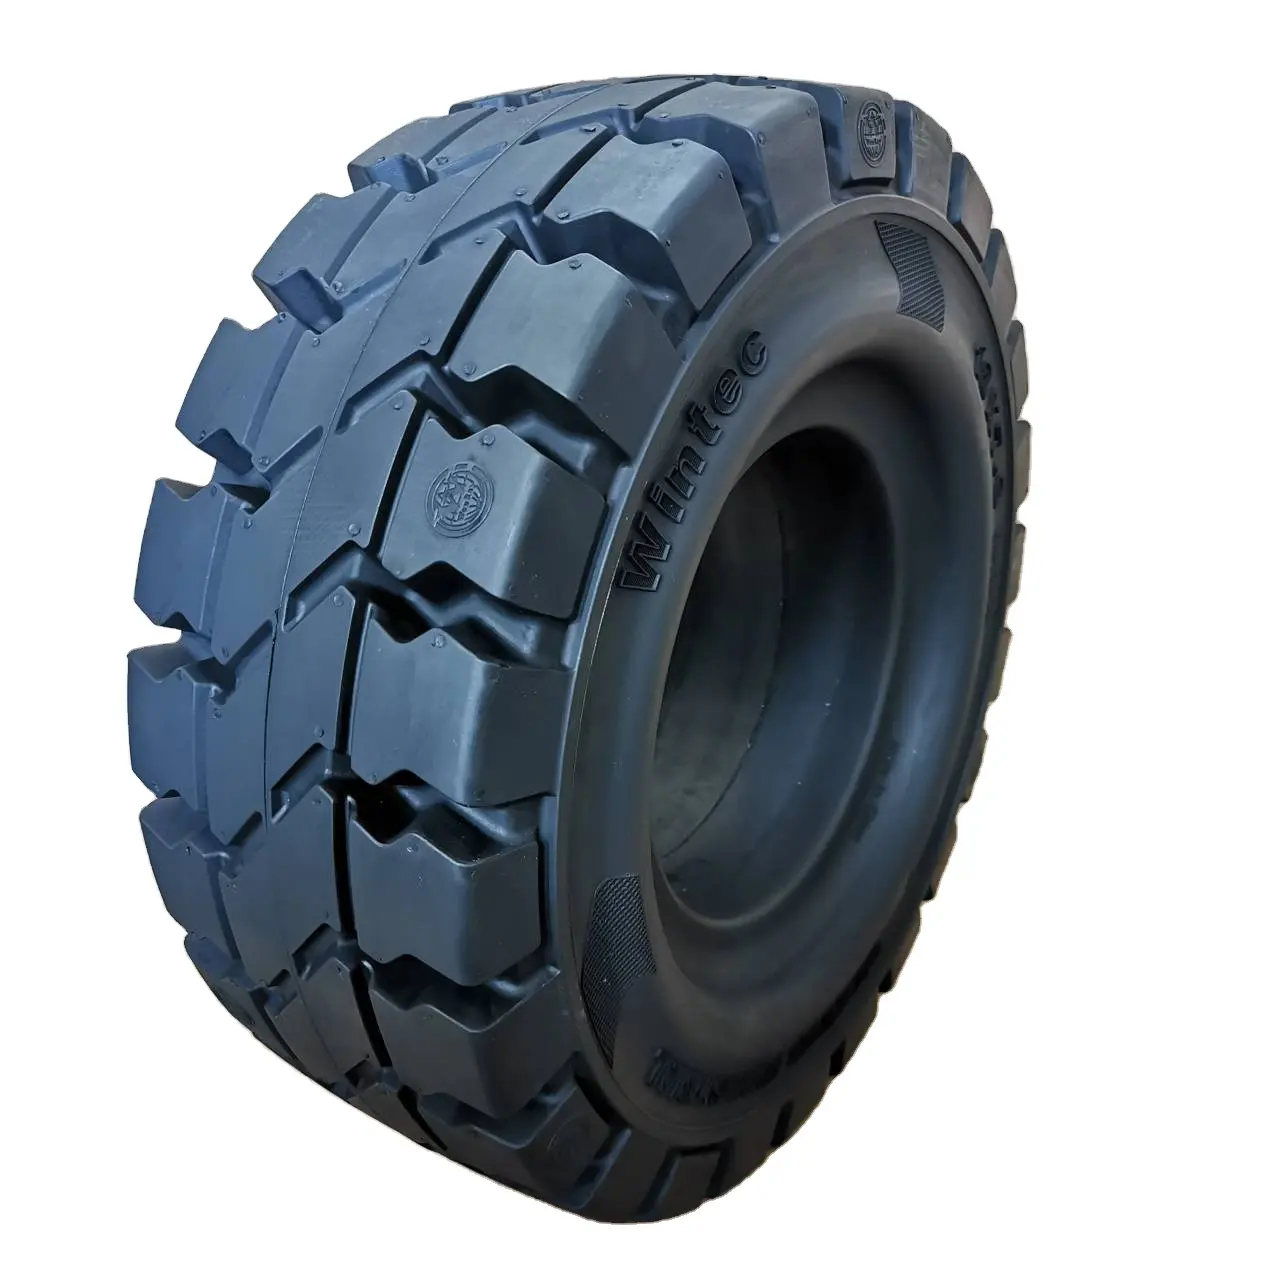 Yale 30 3t forklift parçaları forklift lastikleri 7.00-12 18x7-8 4.33R forklift için endüstriyel lastik katı lastik kauçuk pneu